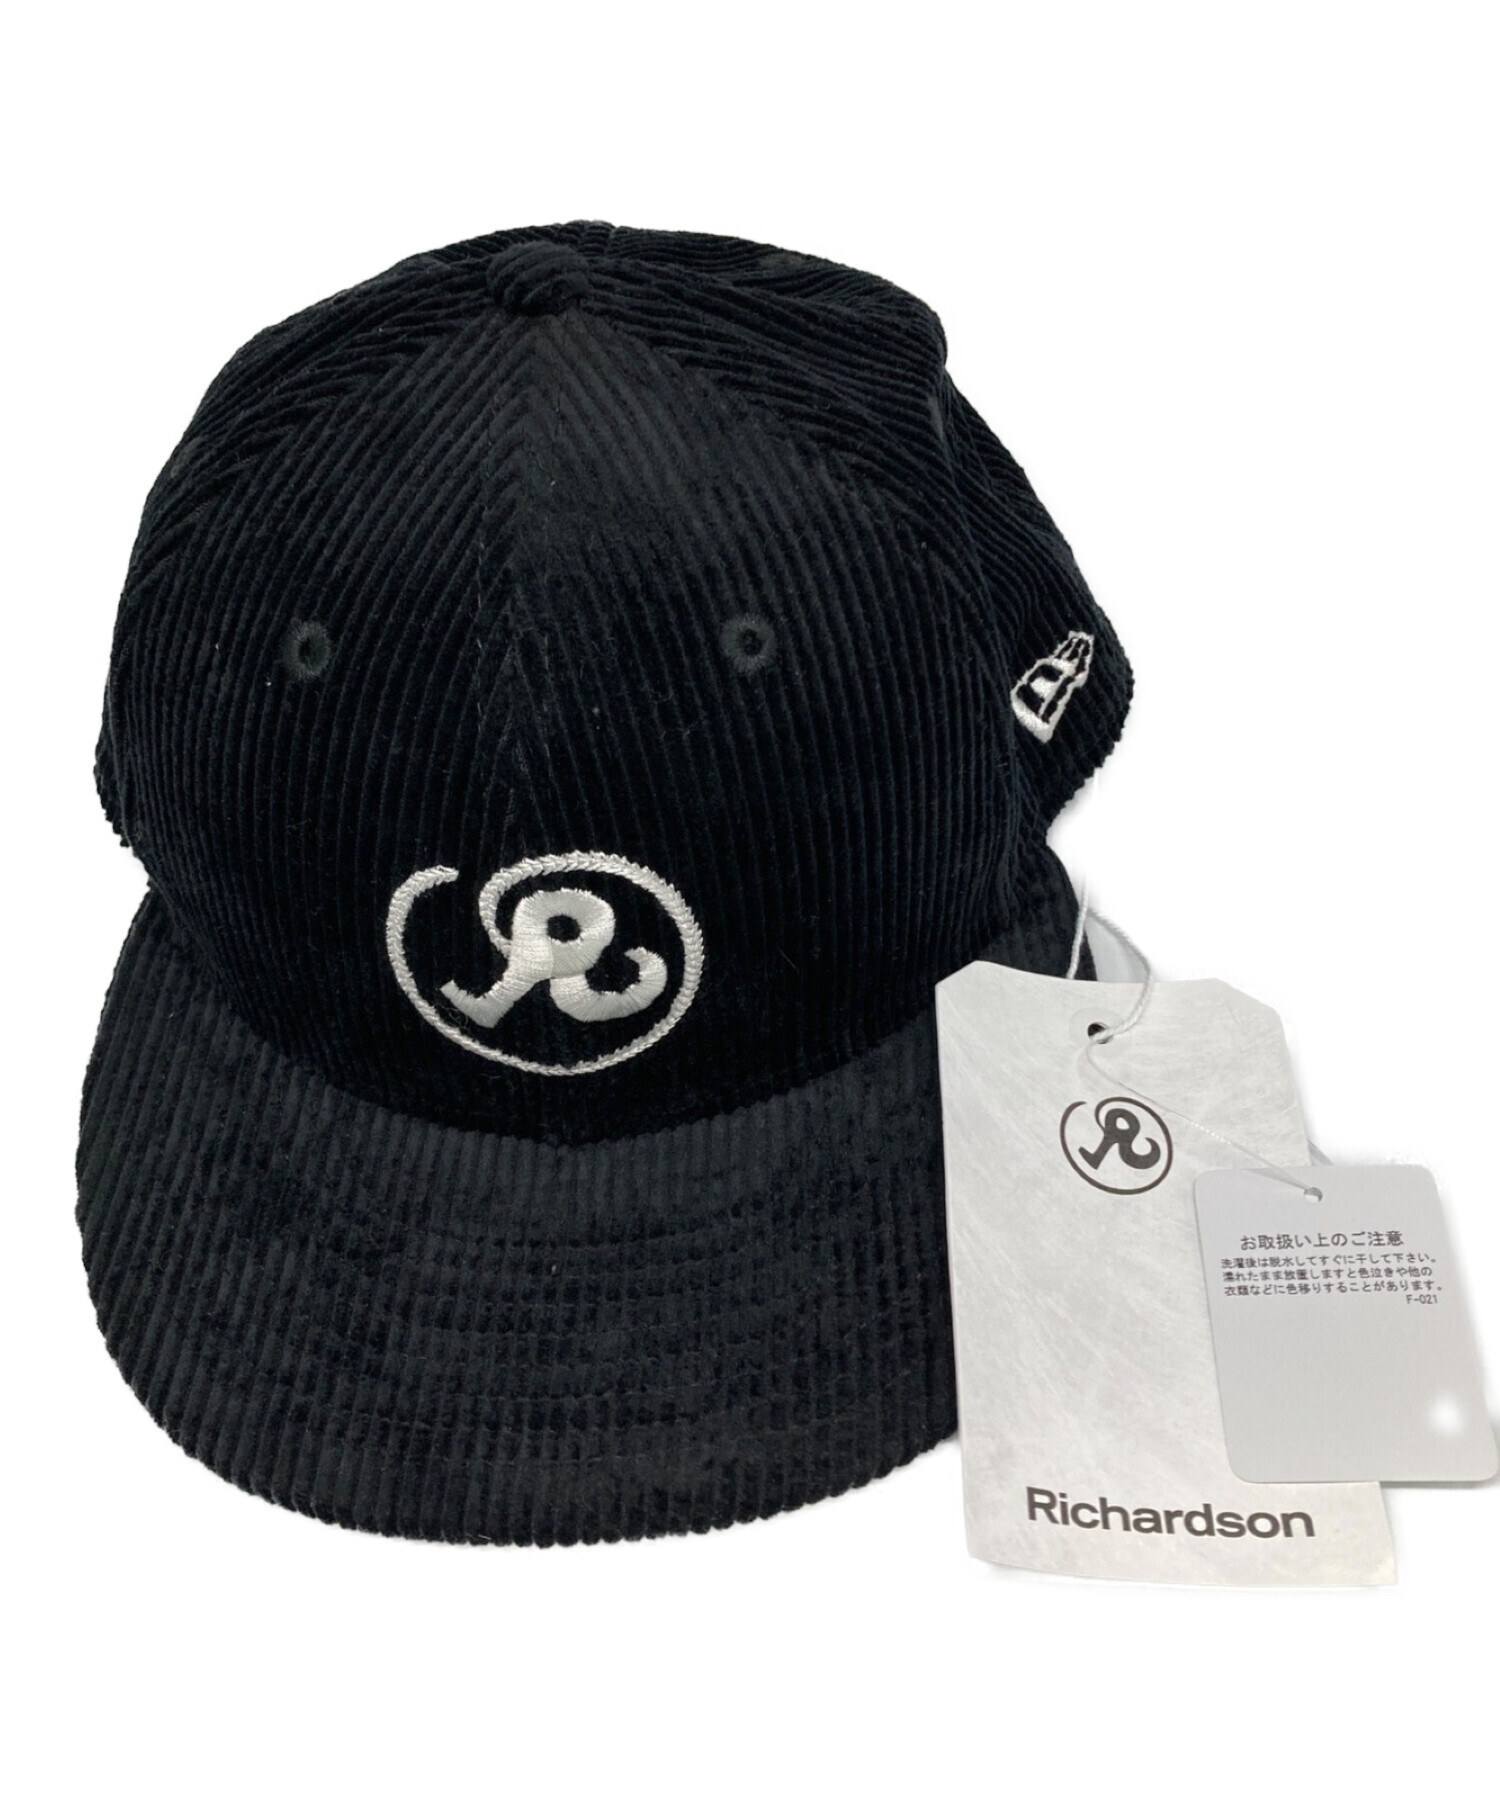 Richardson (リチャードソン) New Era (ニューエラ) キャップ ブラック 未使用品